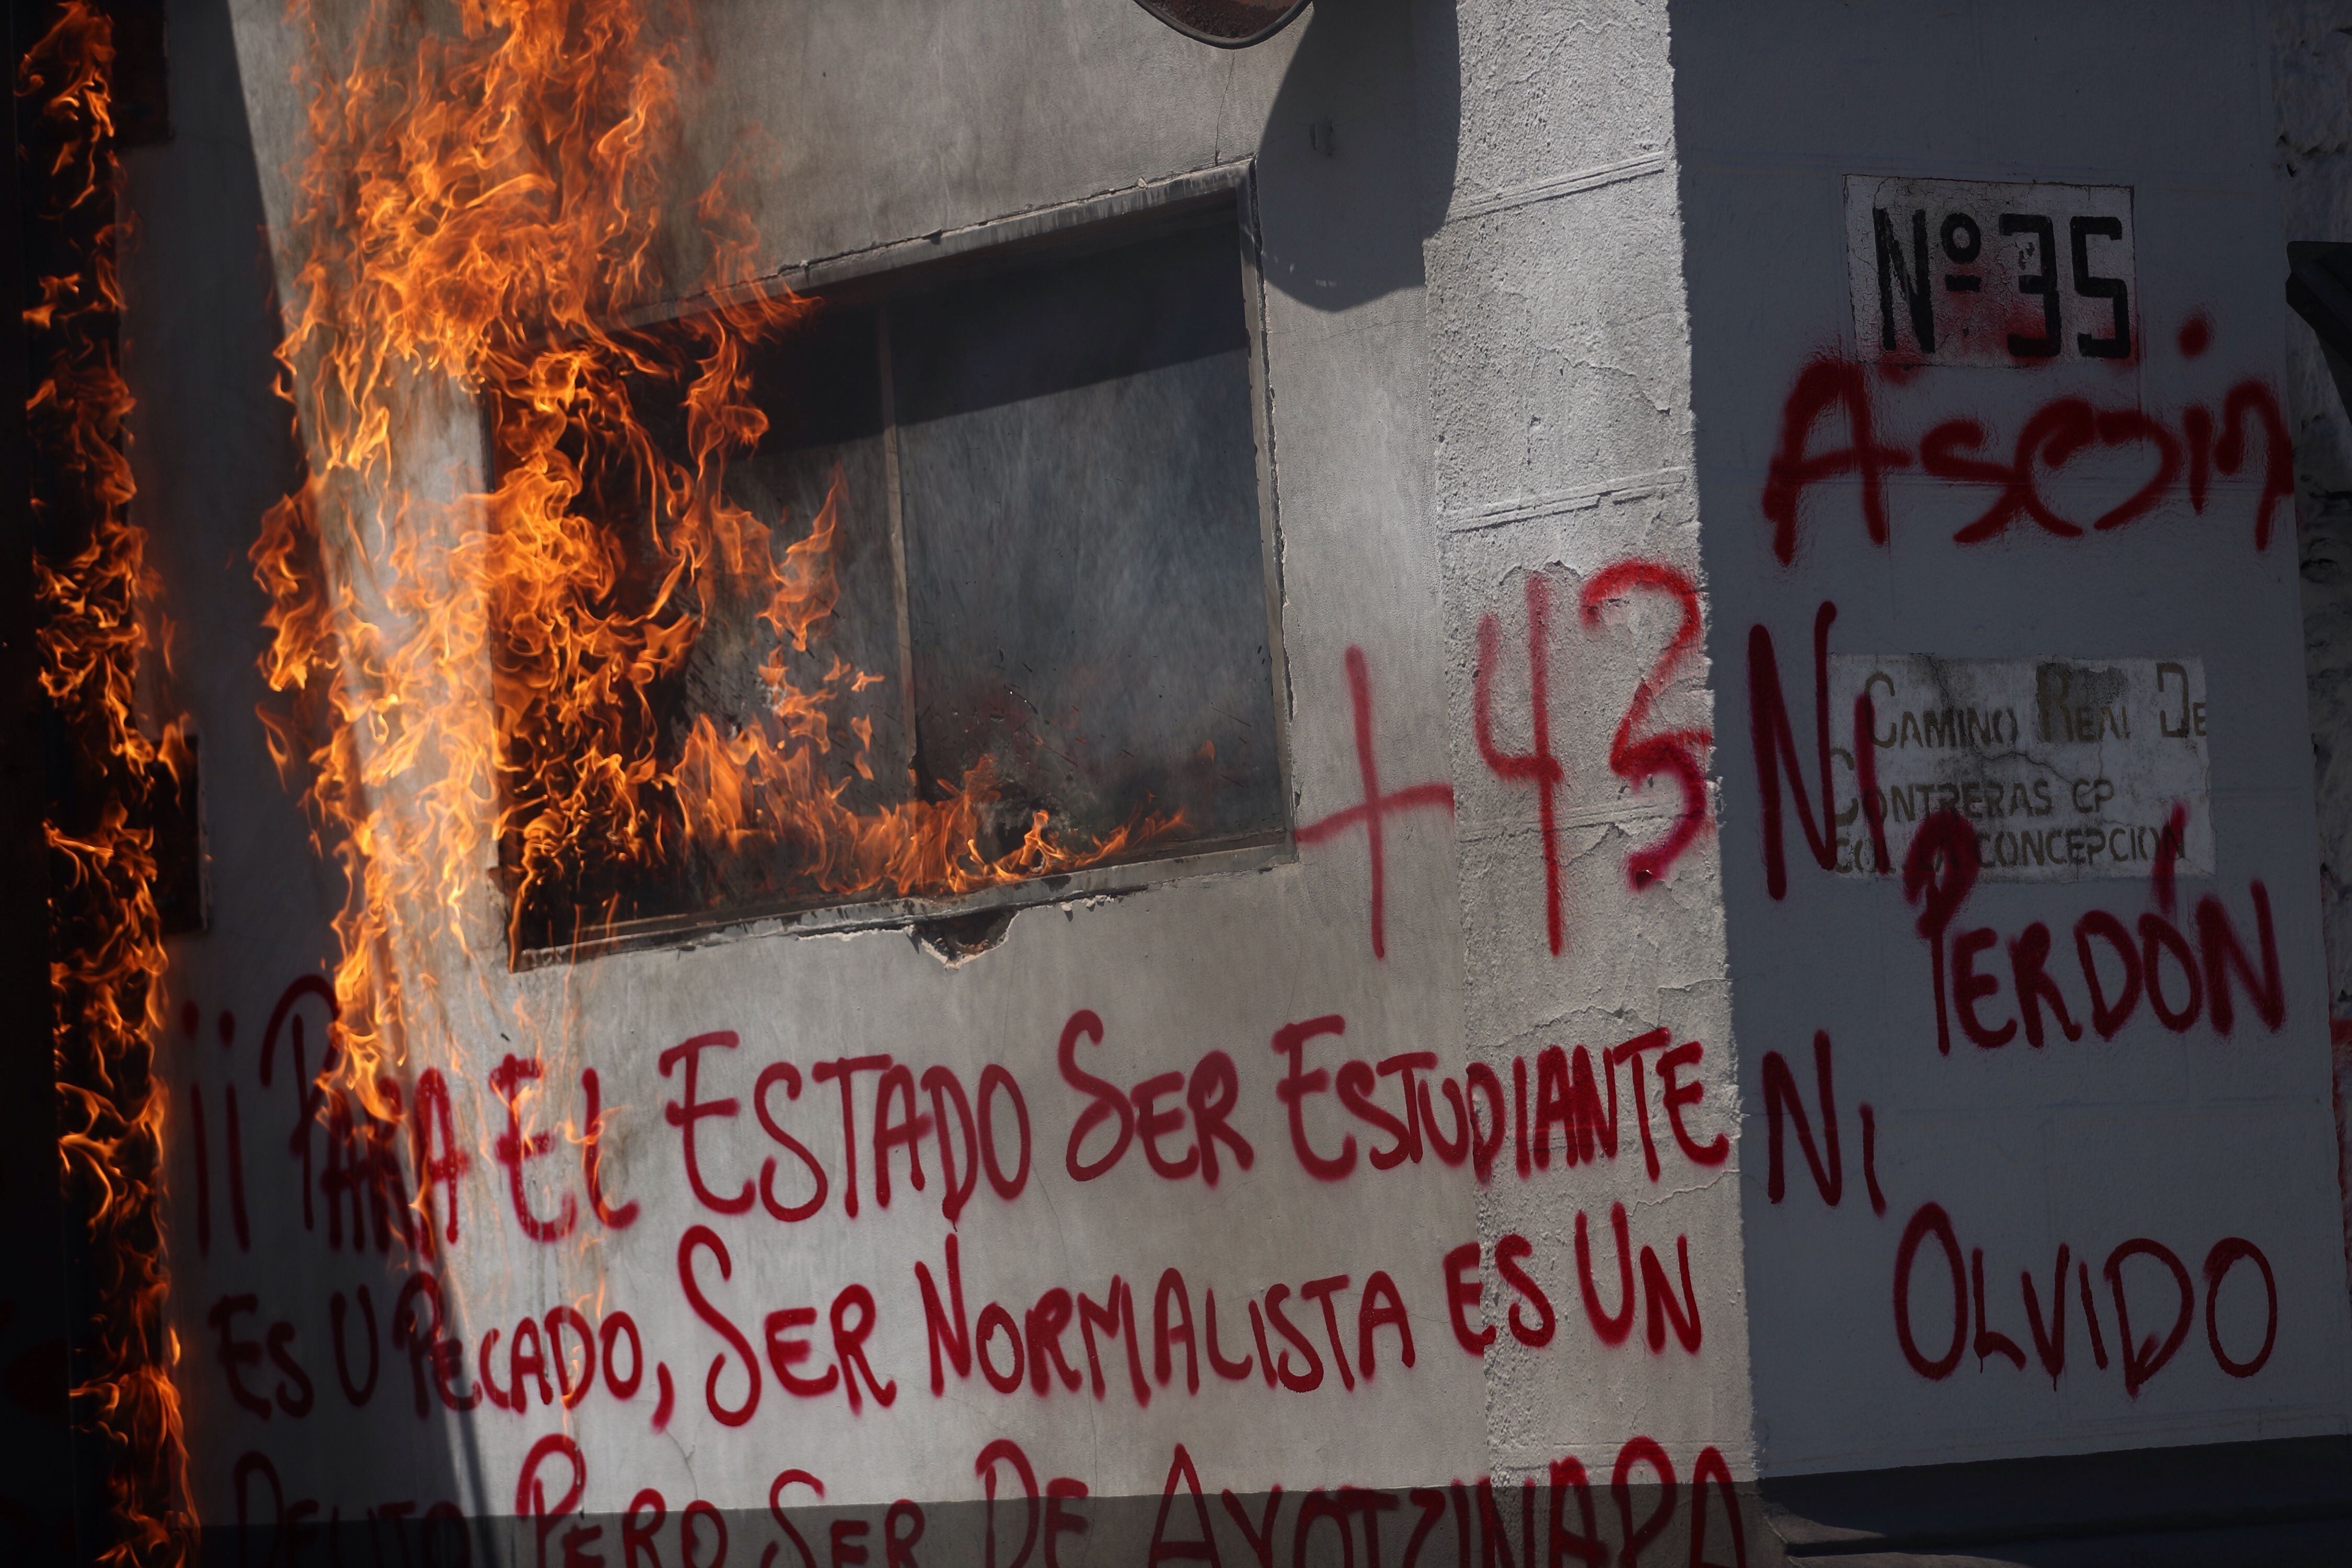 Marcha y protesta estudiantes desaparecidos caso ayotzinapa